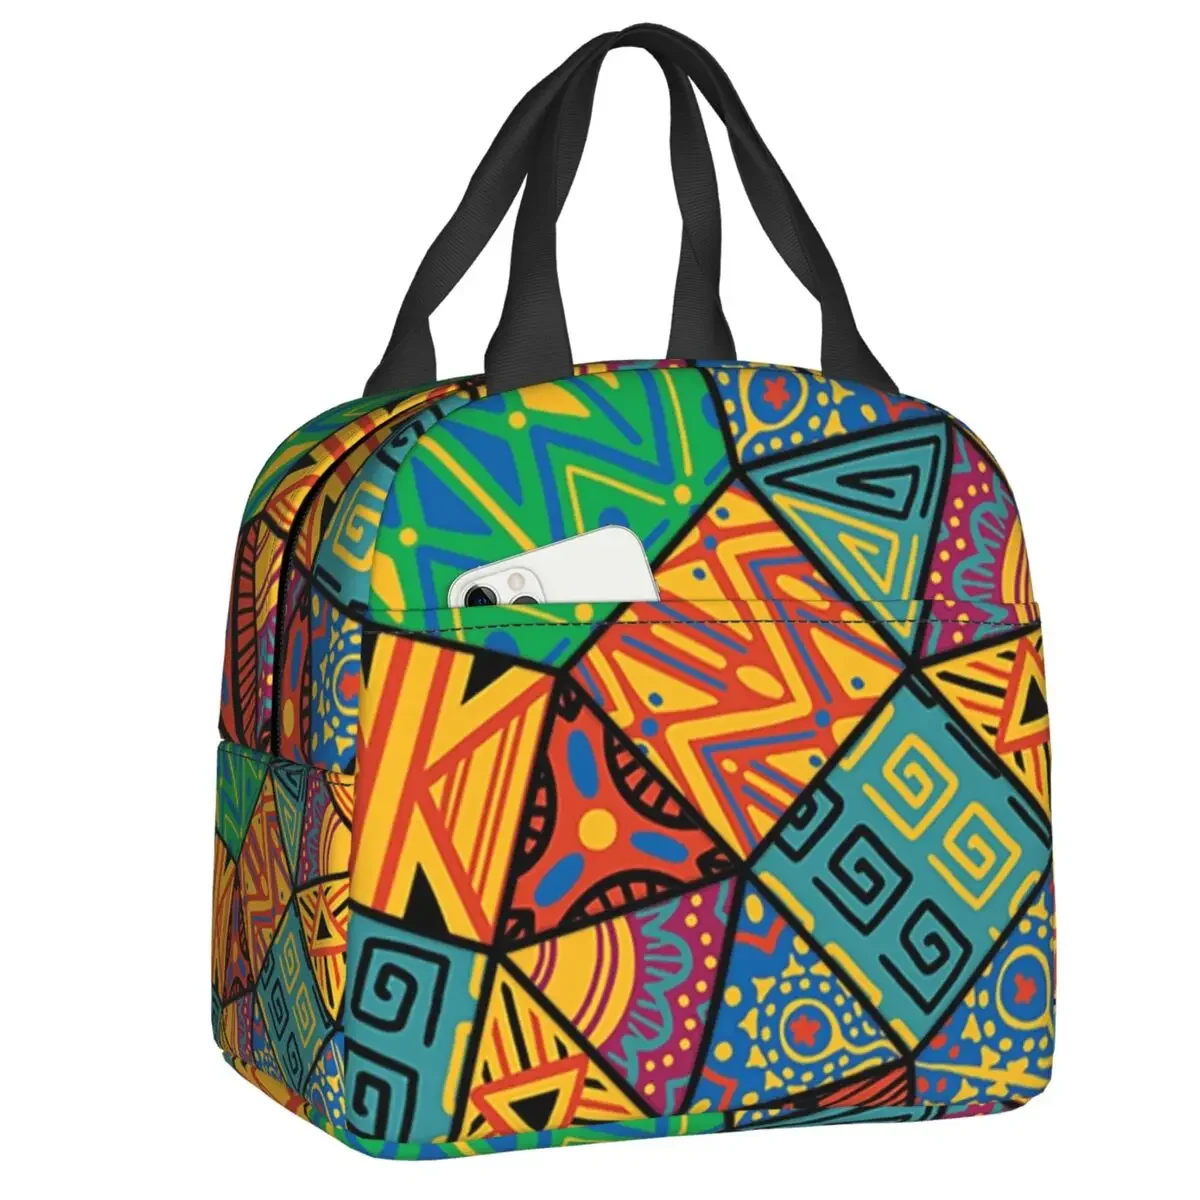 

Африканская кухня монтаж Изолированные сумки для ланча женский Африканский Племенной арт портативный охладитель термальный пищевой Ланч-бокс для работы школы путешествий